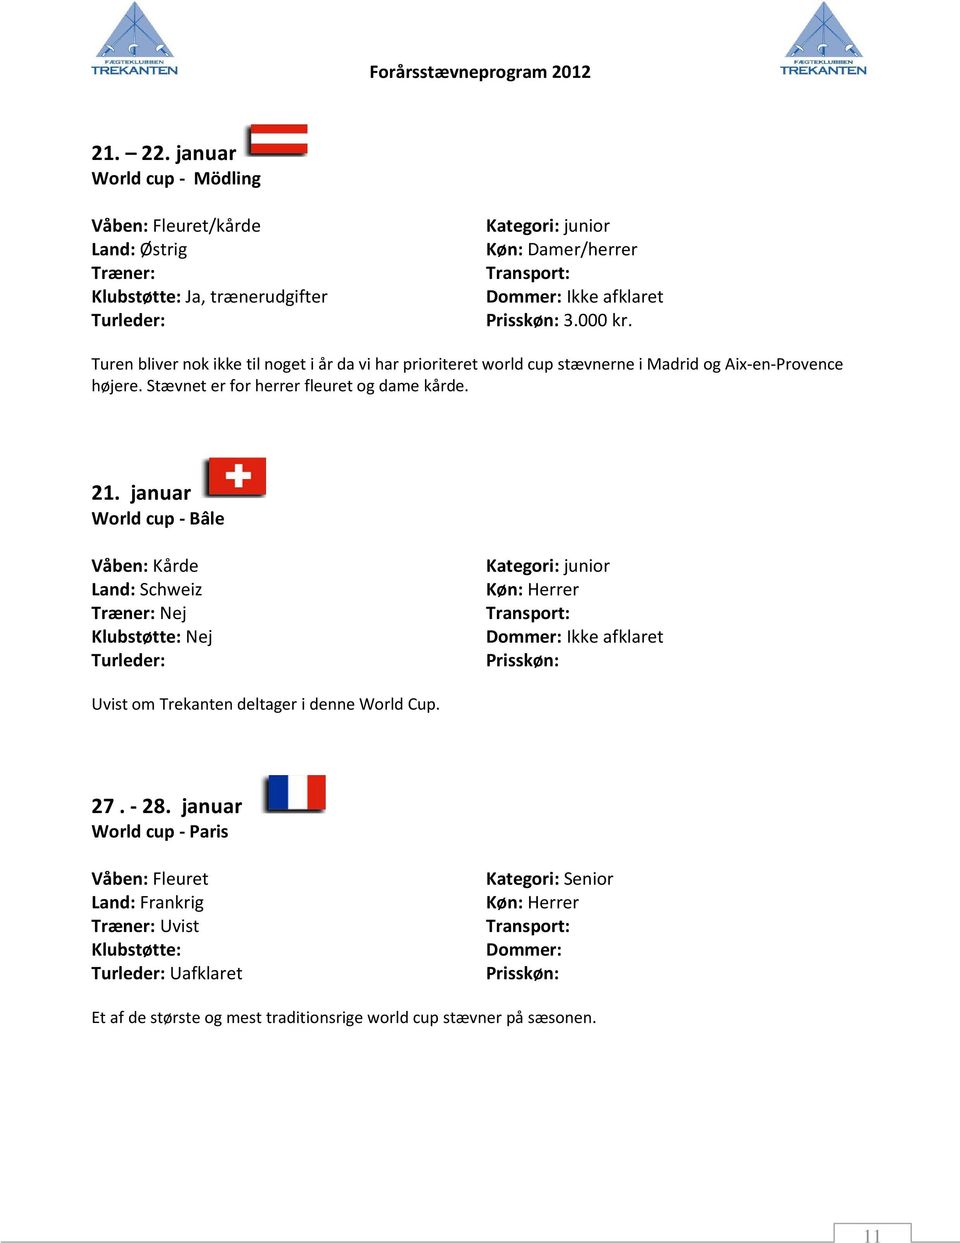 21. januar World cup - Bâle Våben: Kårde Land: Schweiz Træner: Nej Kategori: junior Køn: Herrer Ikke afklaret Uvist om Trekanten deltager i denne World Cup. 27.